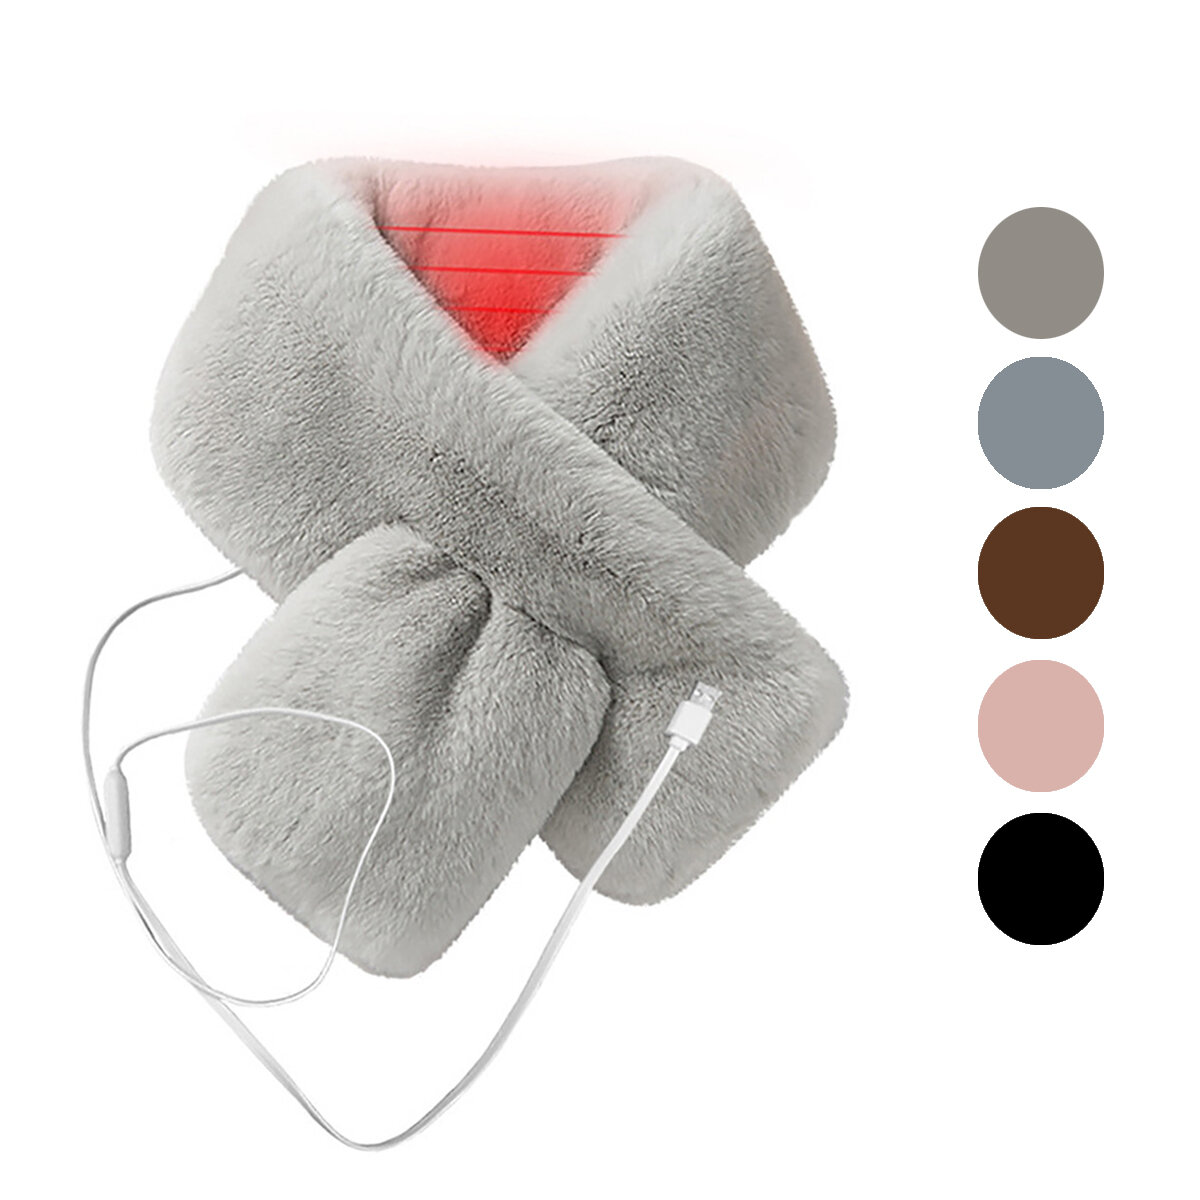 厚手のプラッシュとフェイクファーでできた女性用の電気加熱スカーフがあります。USBポートに接続して、冬に首を温めることができます。